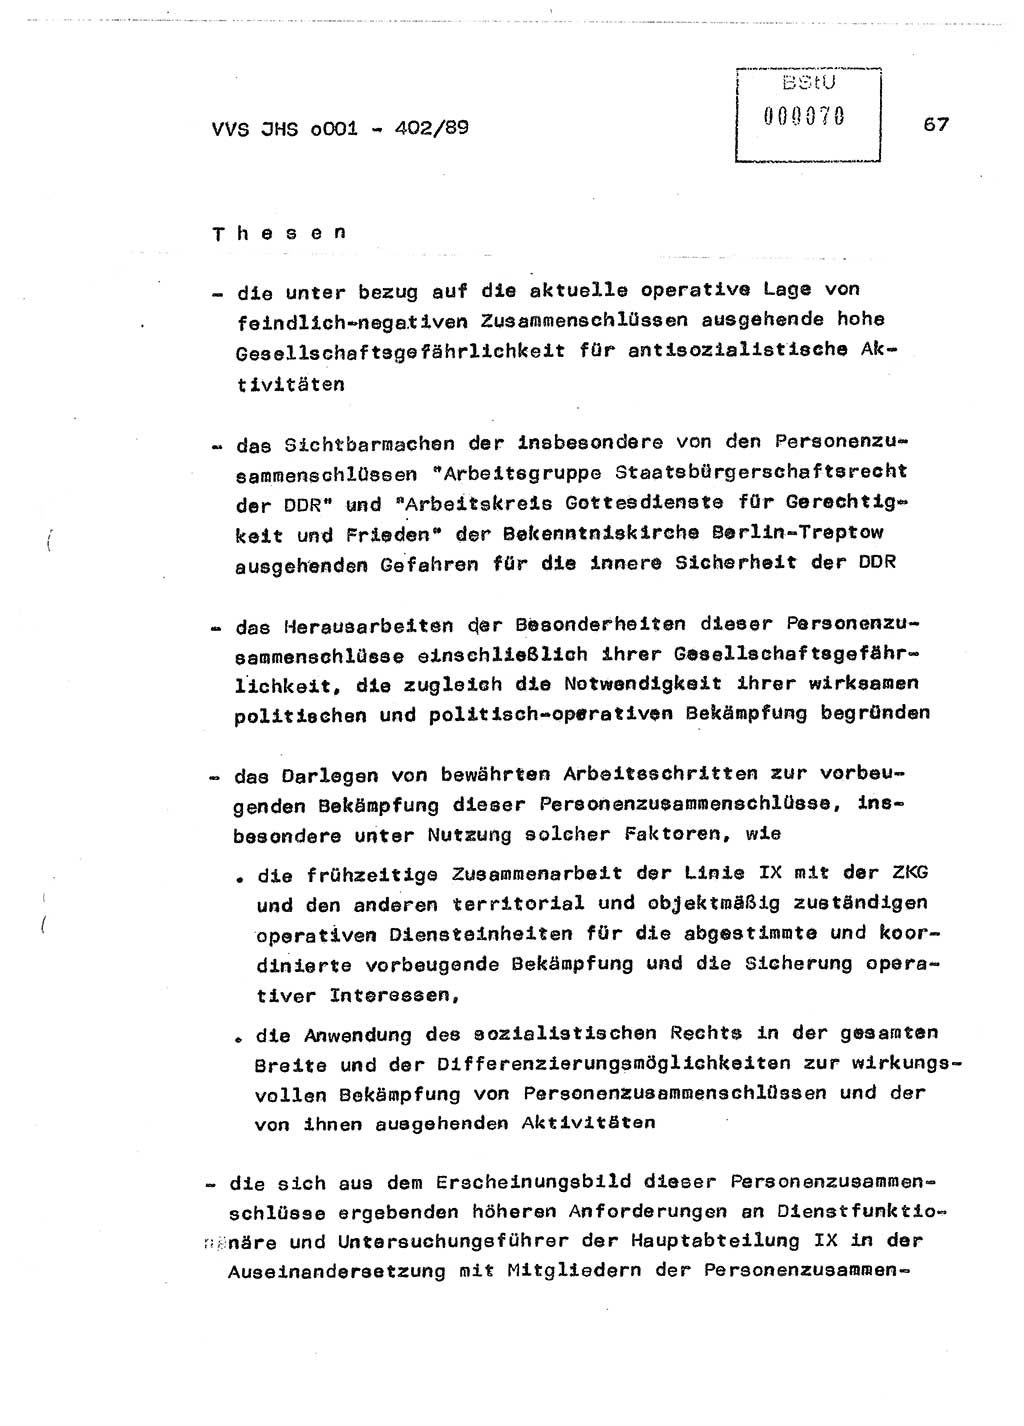 Diplomarbeit Major Günter Müller (HA Ⅸ/9), Ministerium für Staatssicherheit (MfS) [Deutsche Demokratische Republik (DDR)], Juristische Hochschule (JHS), Vertrauliche Verschlußsache (VVS) o001-402/89, Potsdam 1989, Seite 67 (Dipl.-Arb. MfS DDR JHS VVS o001-402/89 1989, S. 67)